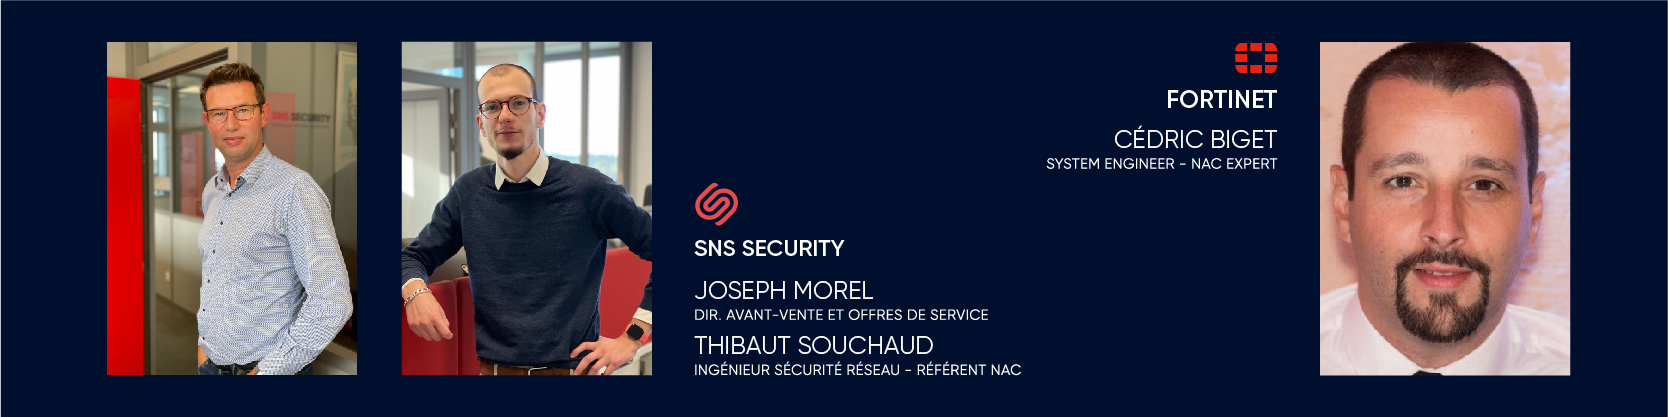 Rejoignez Joseph Morel (directeur avant-vente SNS SECURITY), Thibaut Souchaud (référent NAC SNS SECURITY) et Cédric Biget (NAC expert FORTINET).